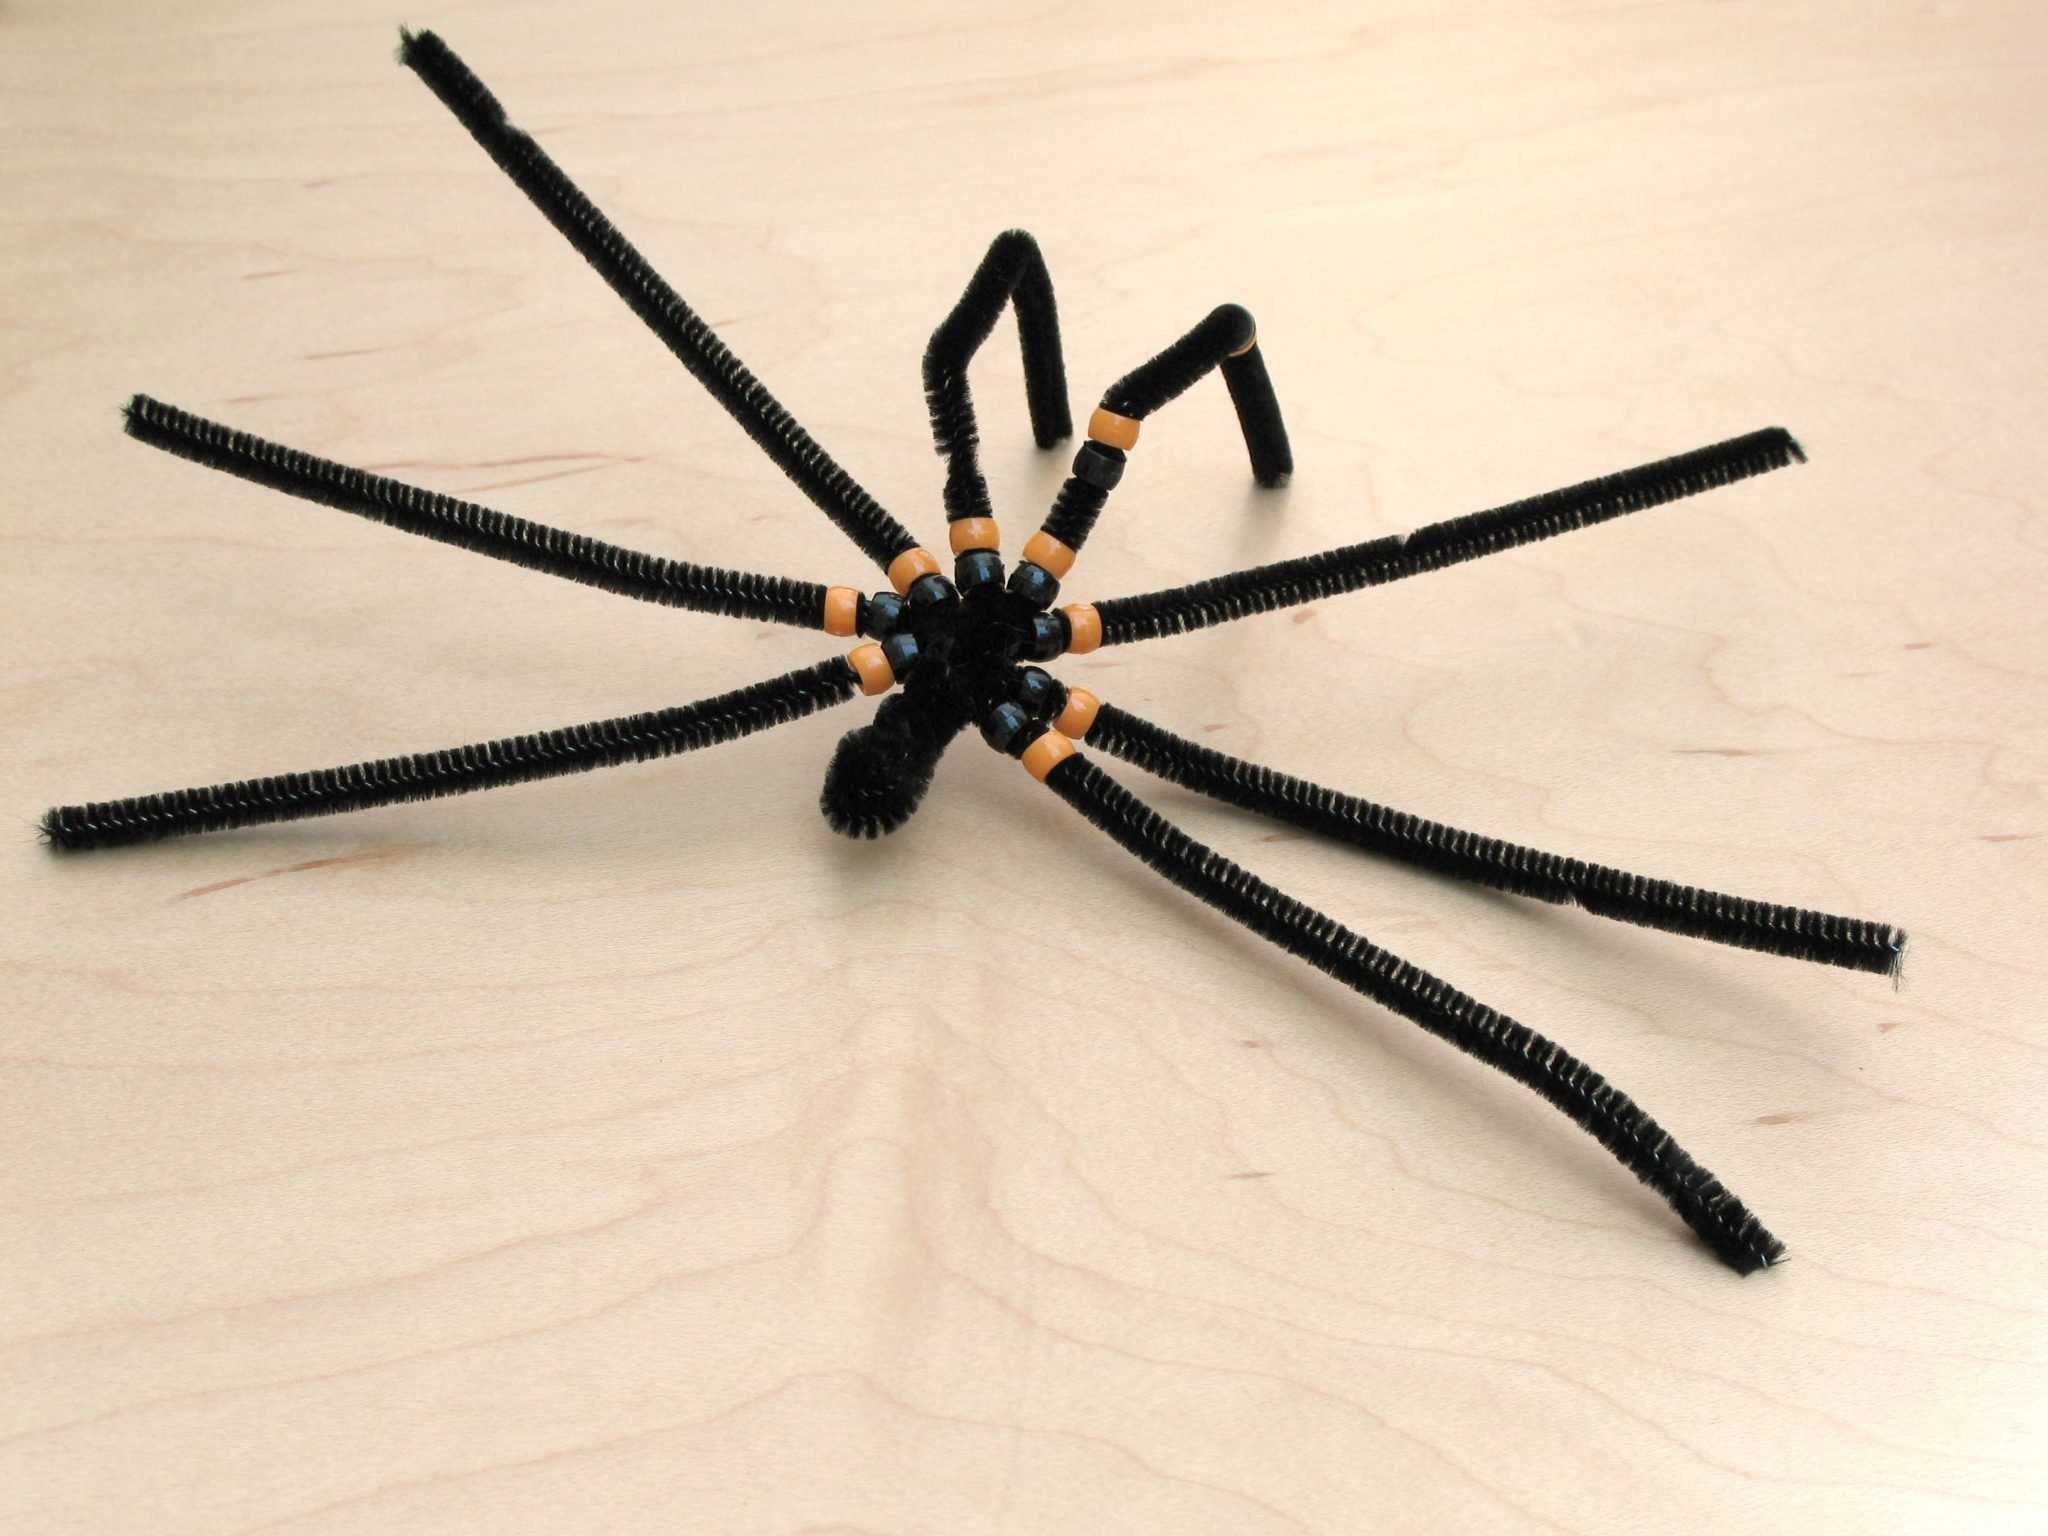 Поделка — паук своими руками для начинающих. как сделать паука из пластилина, бумаги, оригами, бисера, резинок, фольги, мастики, ниток, ткани, картона: схемы, фото